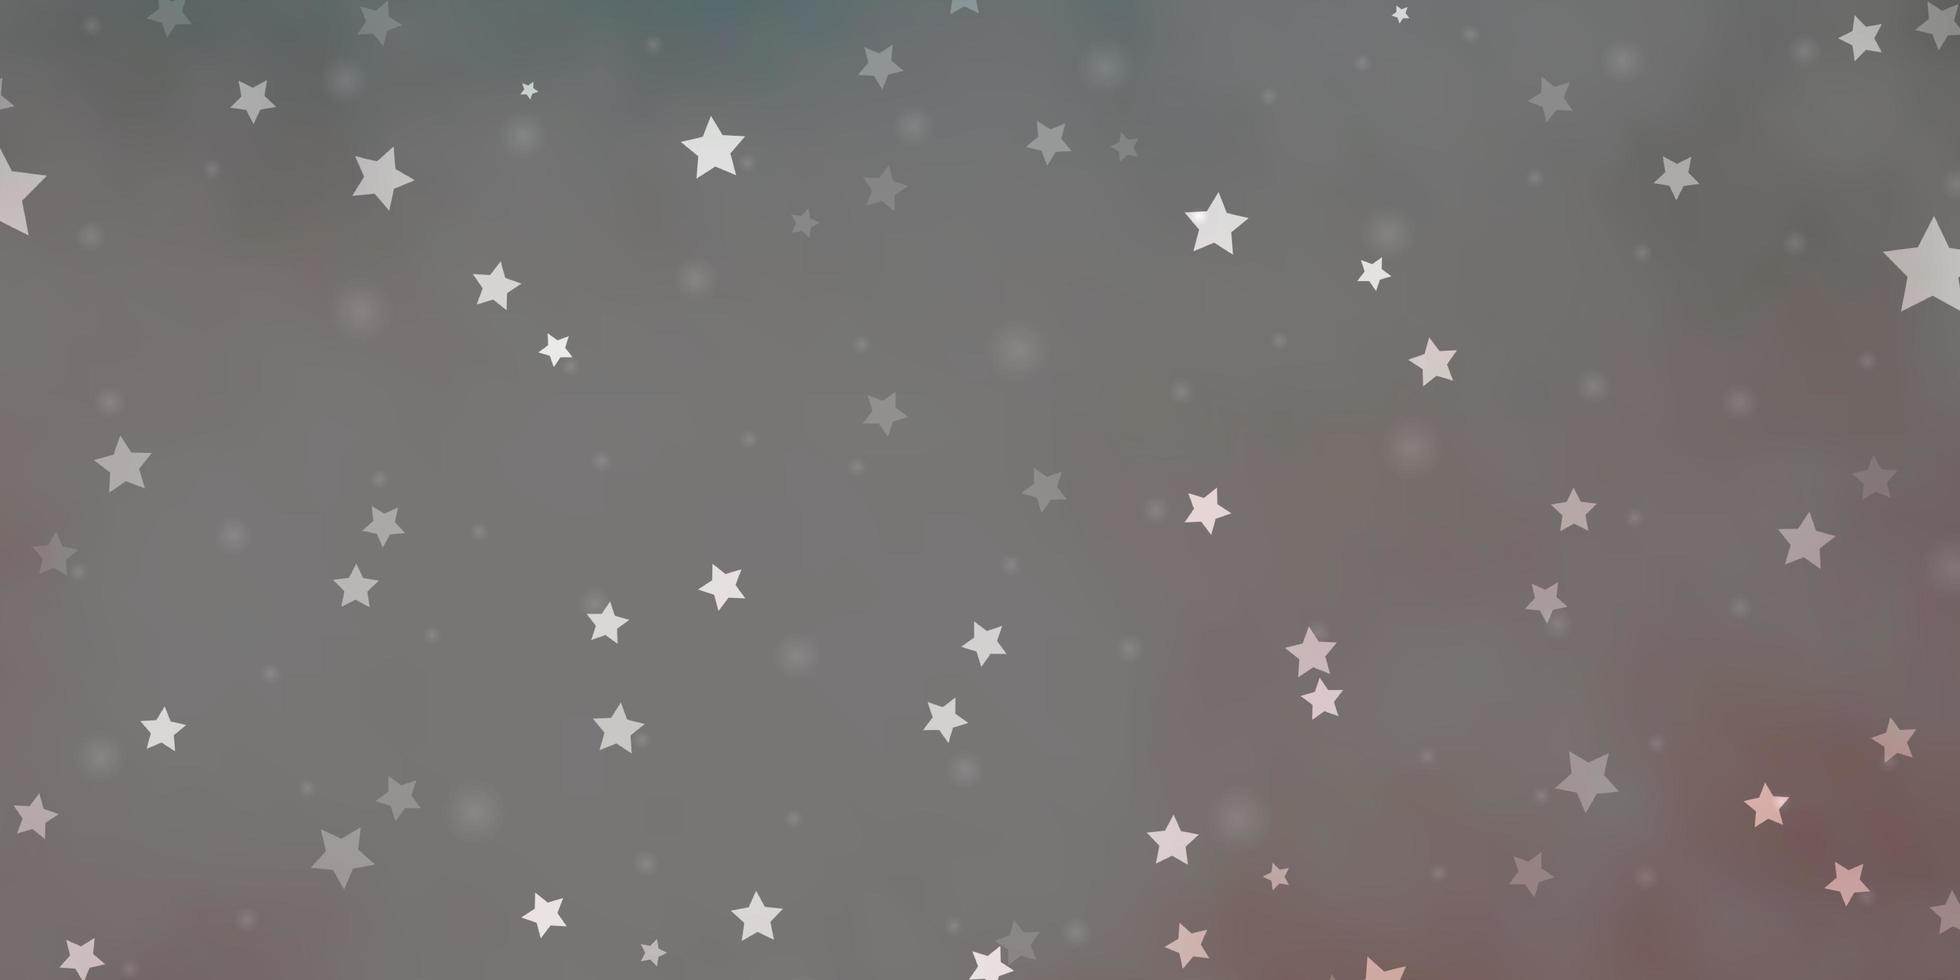 padrão de vetor rosa claro verde com estrelas abstratas ilustração abstrata geométrica moderna com estrelas melhor design para seu banner de cartaz de anúncio